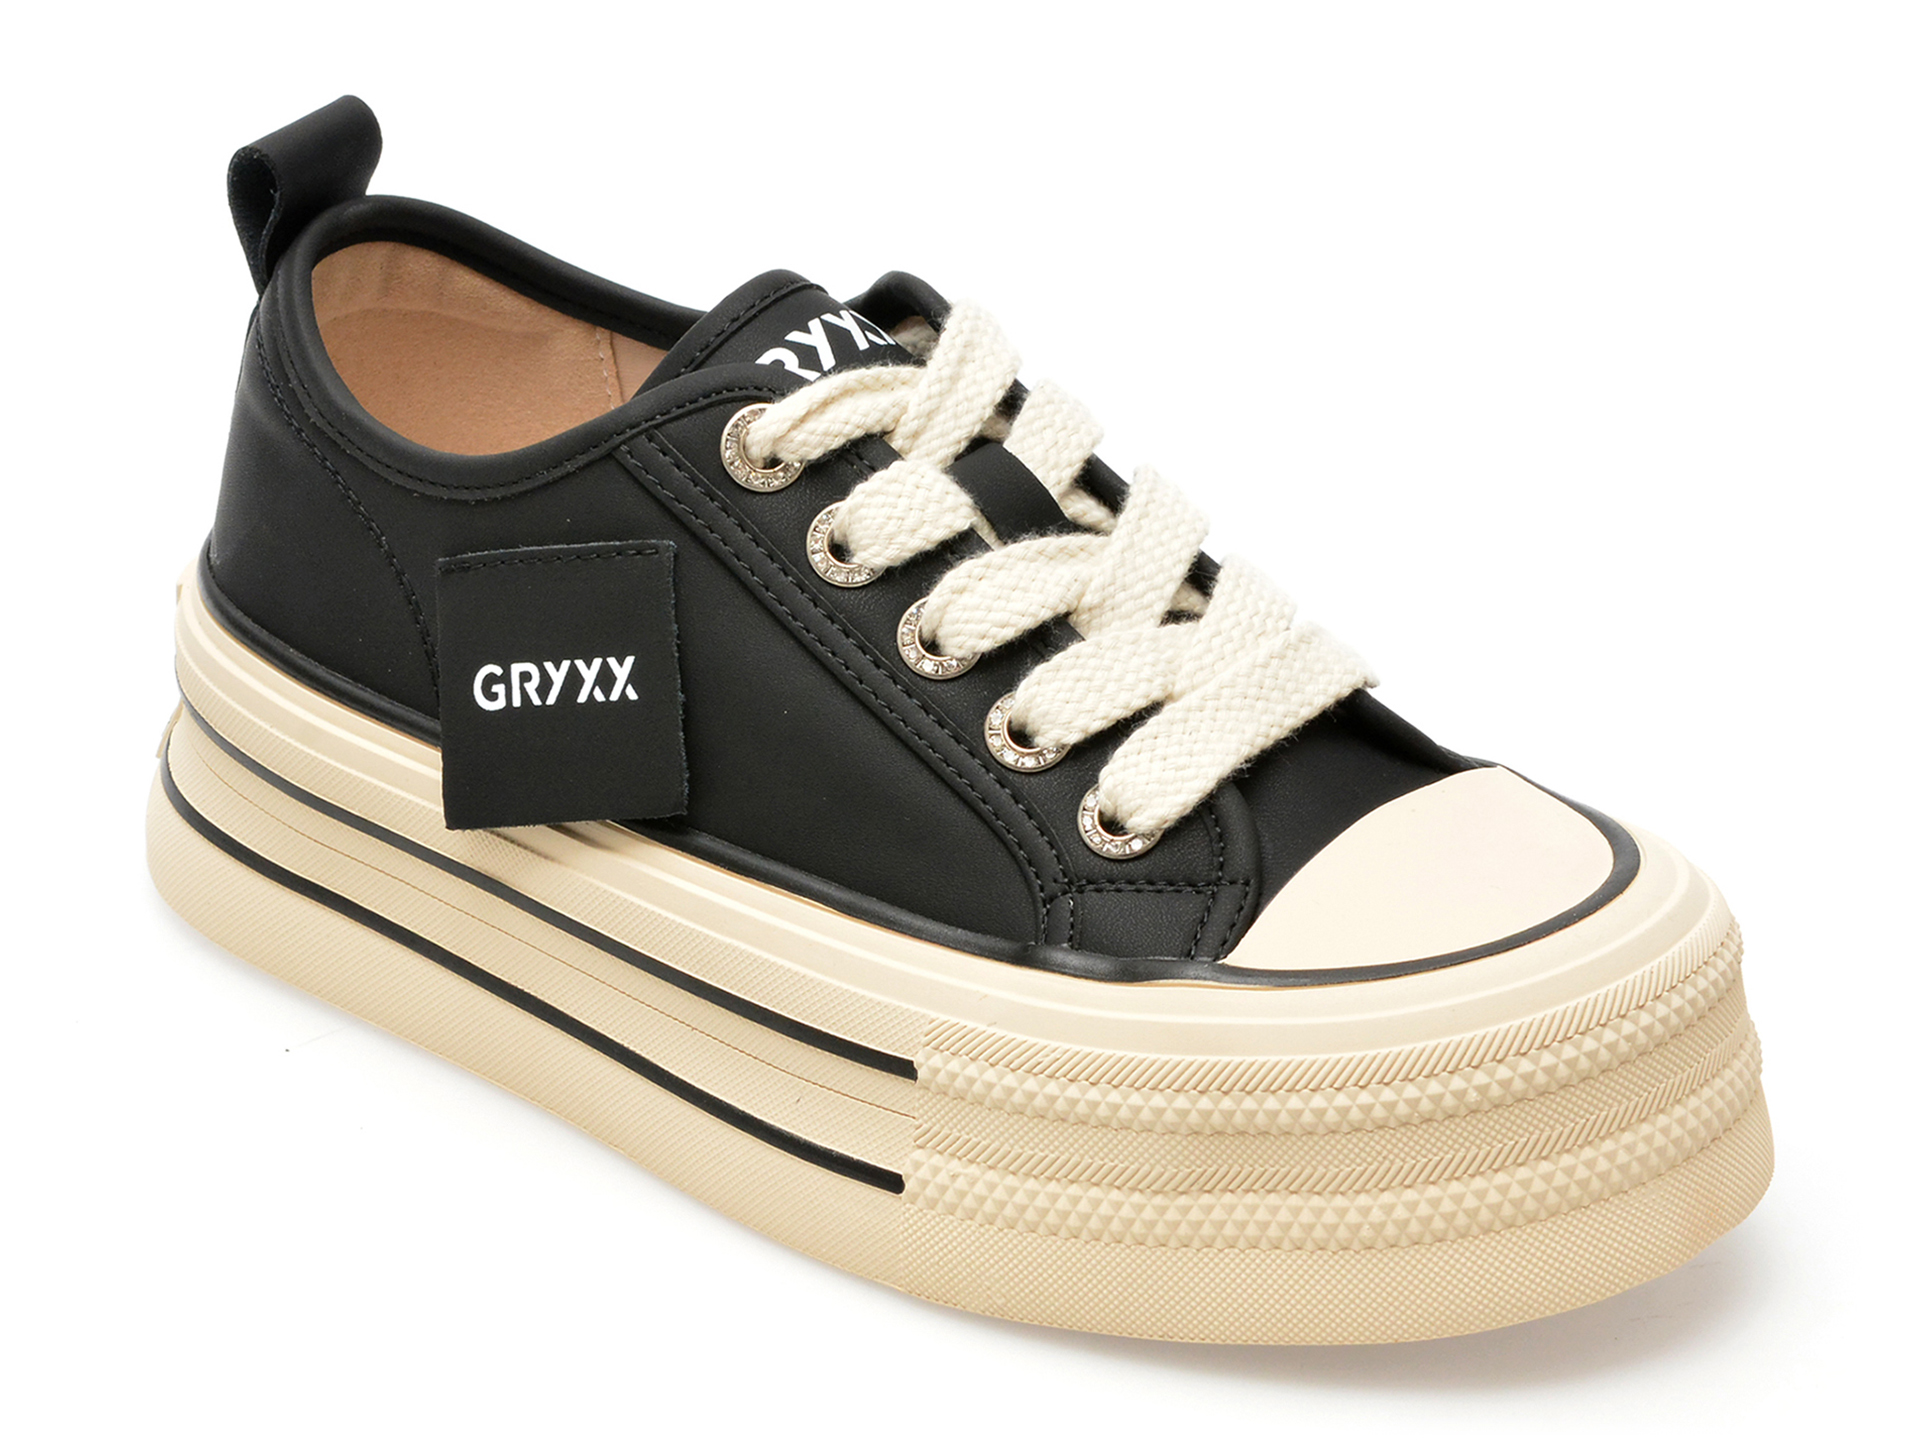 Pantofi GRYXX negri, 3013, din piele naturala